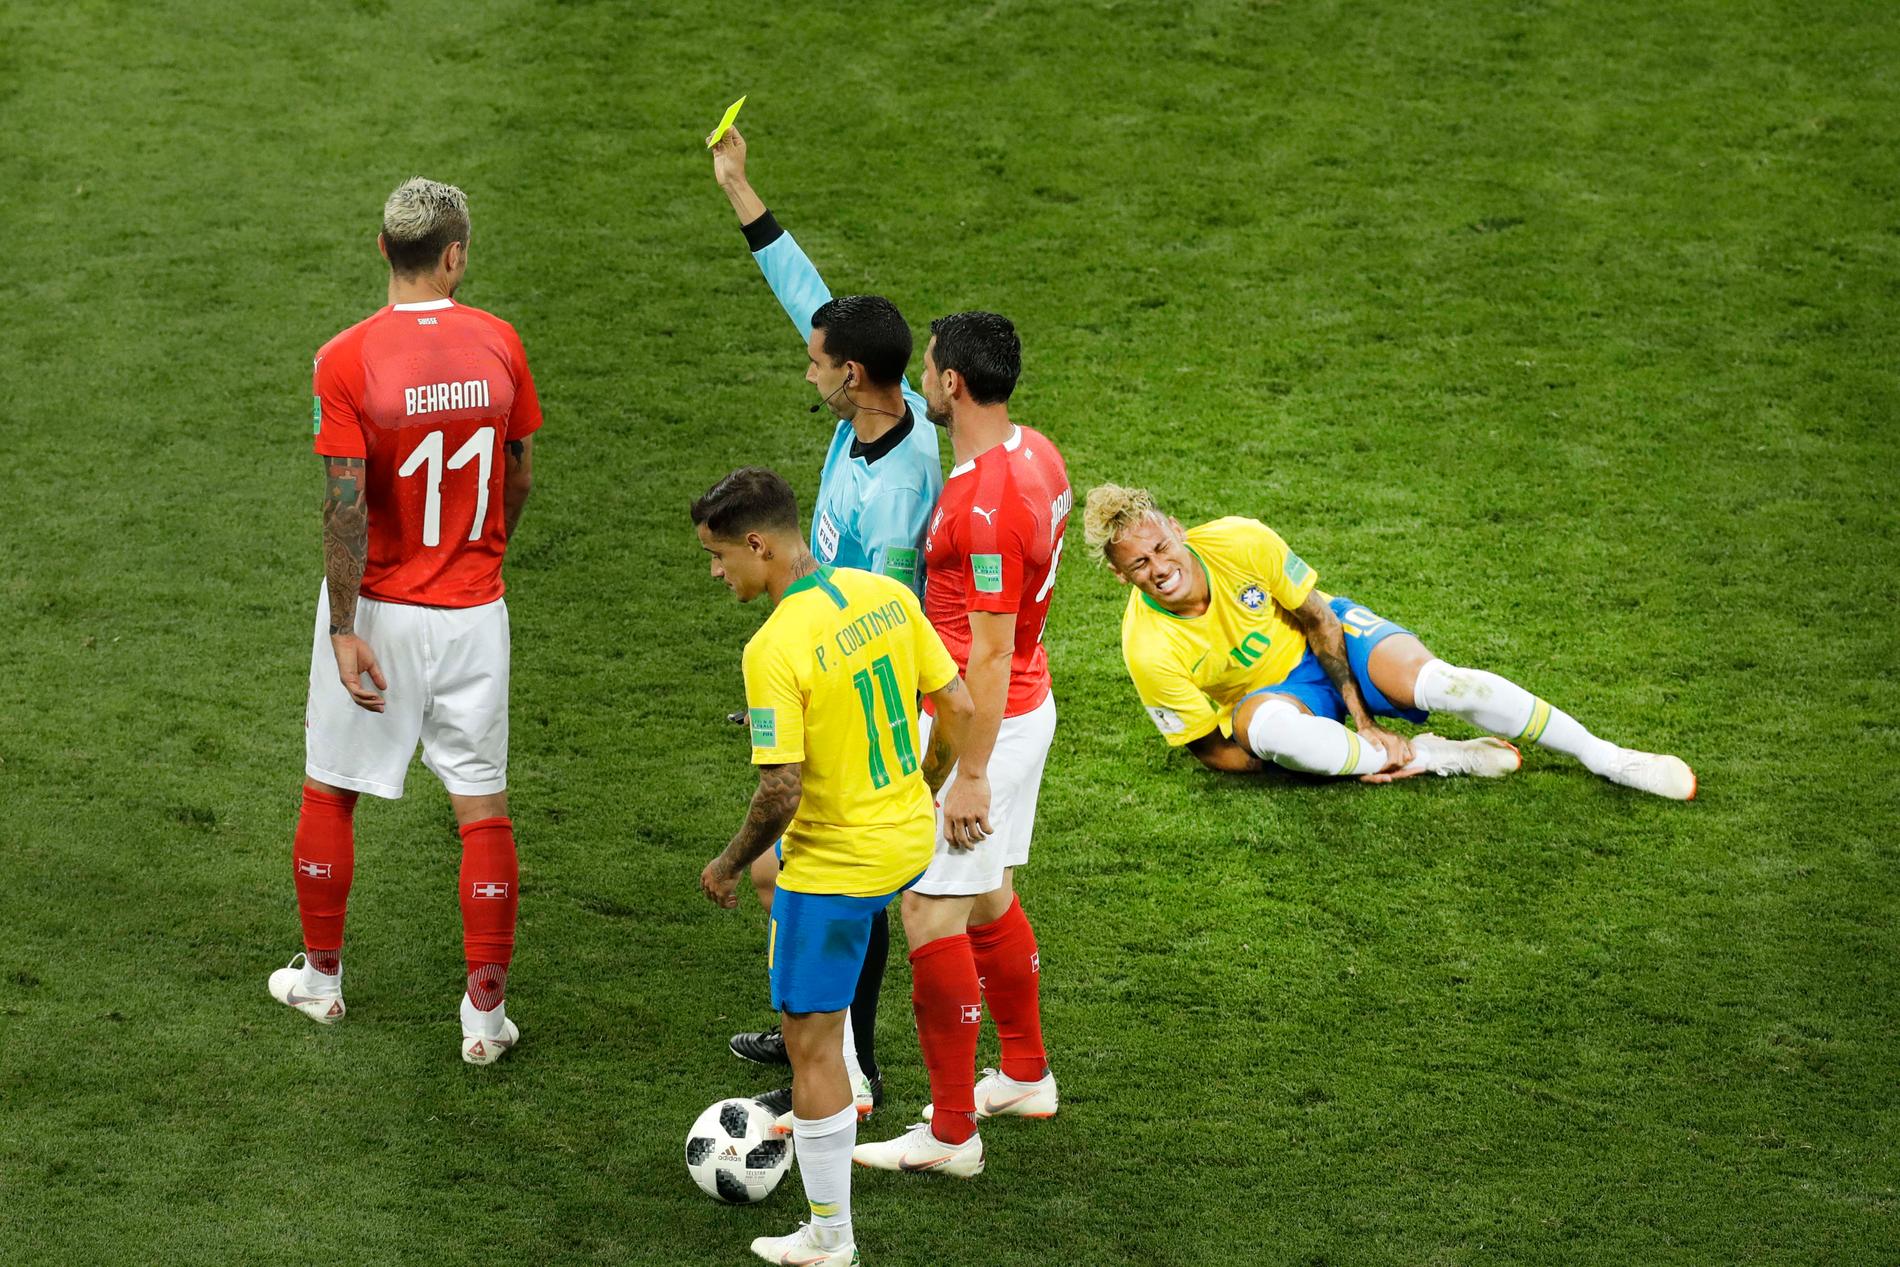 Valon Behrami får gult kort medan Neymar har ont i matchen mellan Schweiz och Brasilien i fotbolls-VM 2018.